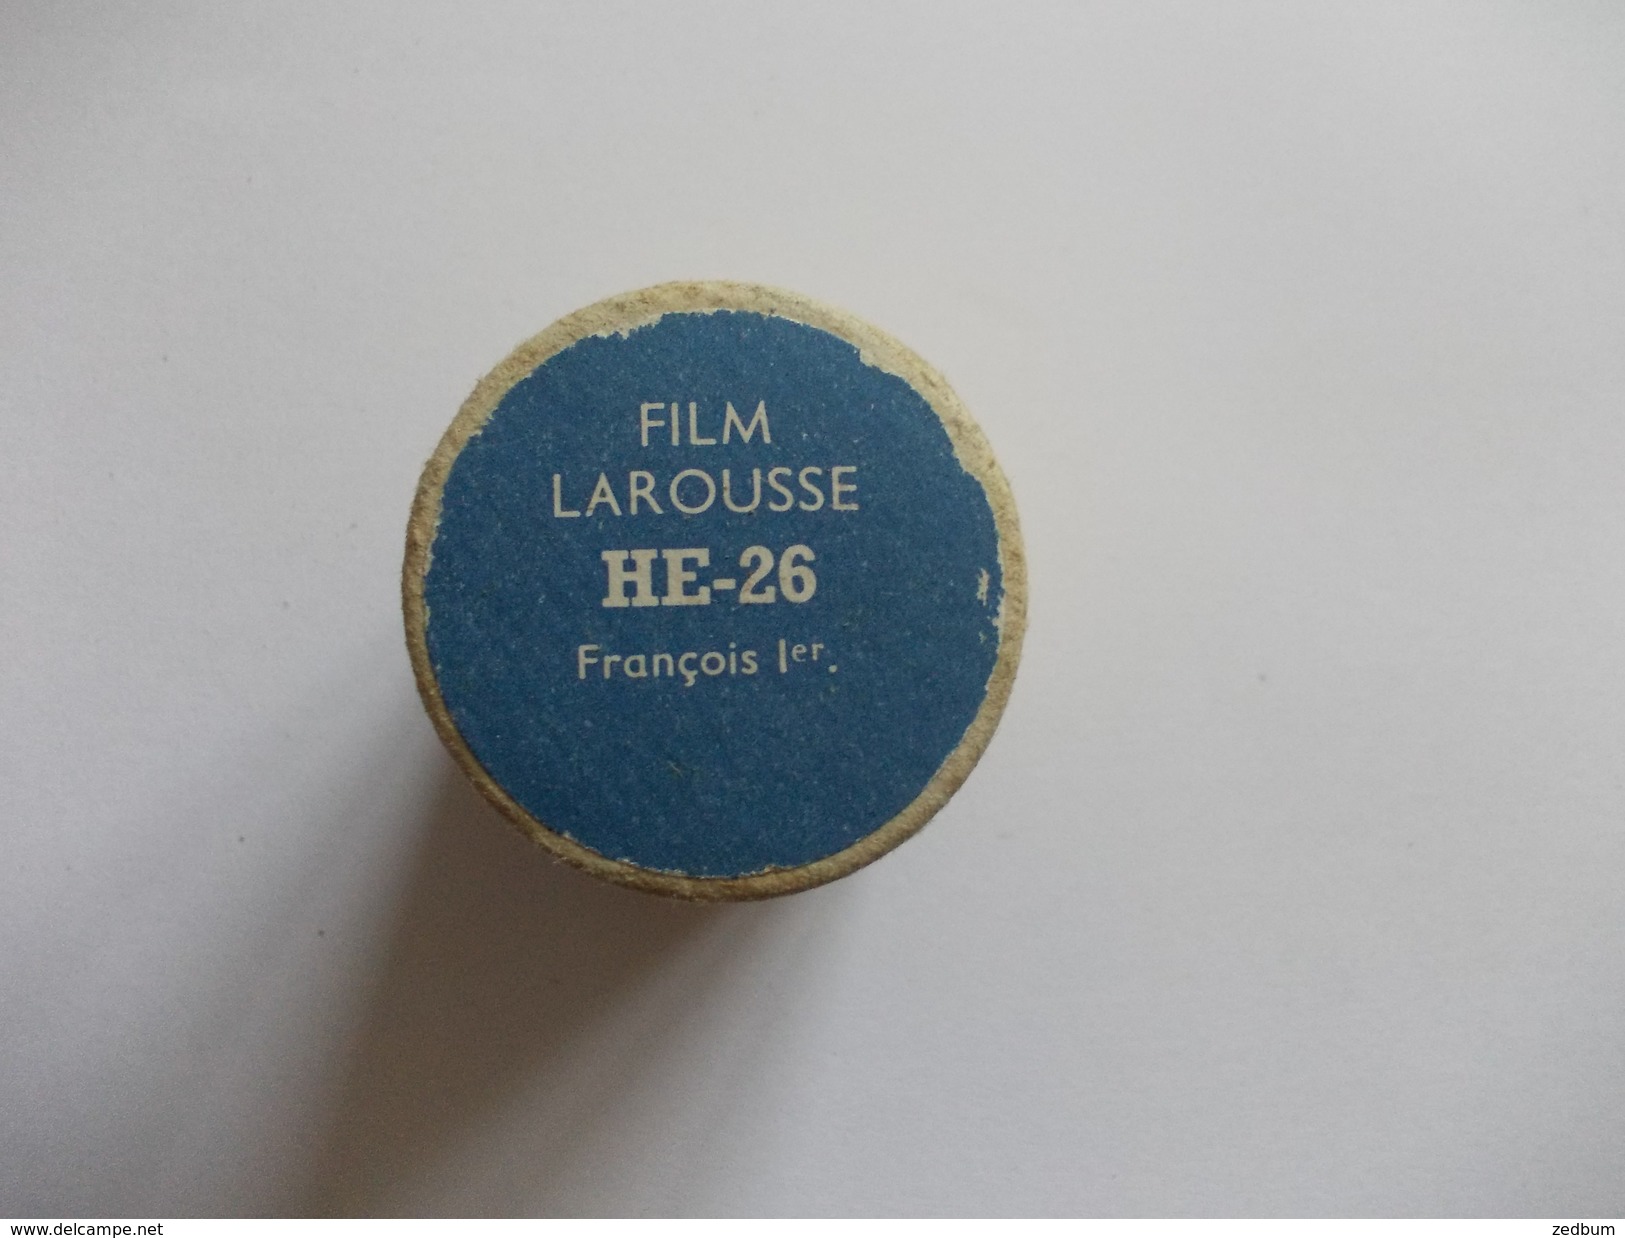 FILM FIXE Larousse HE-26 Francois Ier - Pellicole Cinematografiche: 35mm-16mm-9,5+8+S8mm